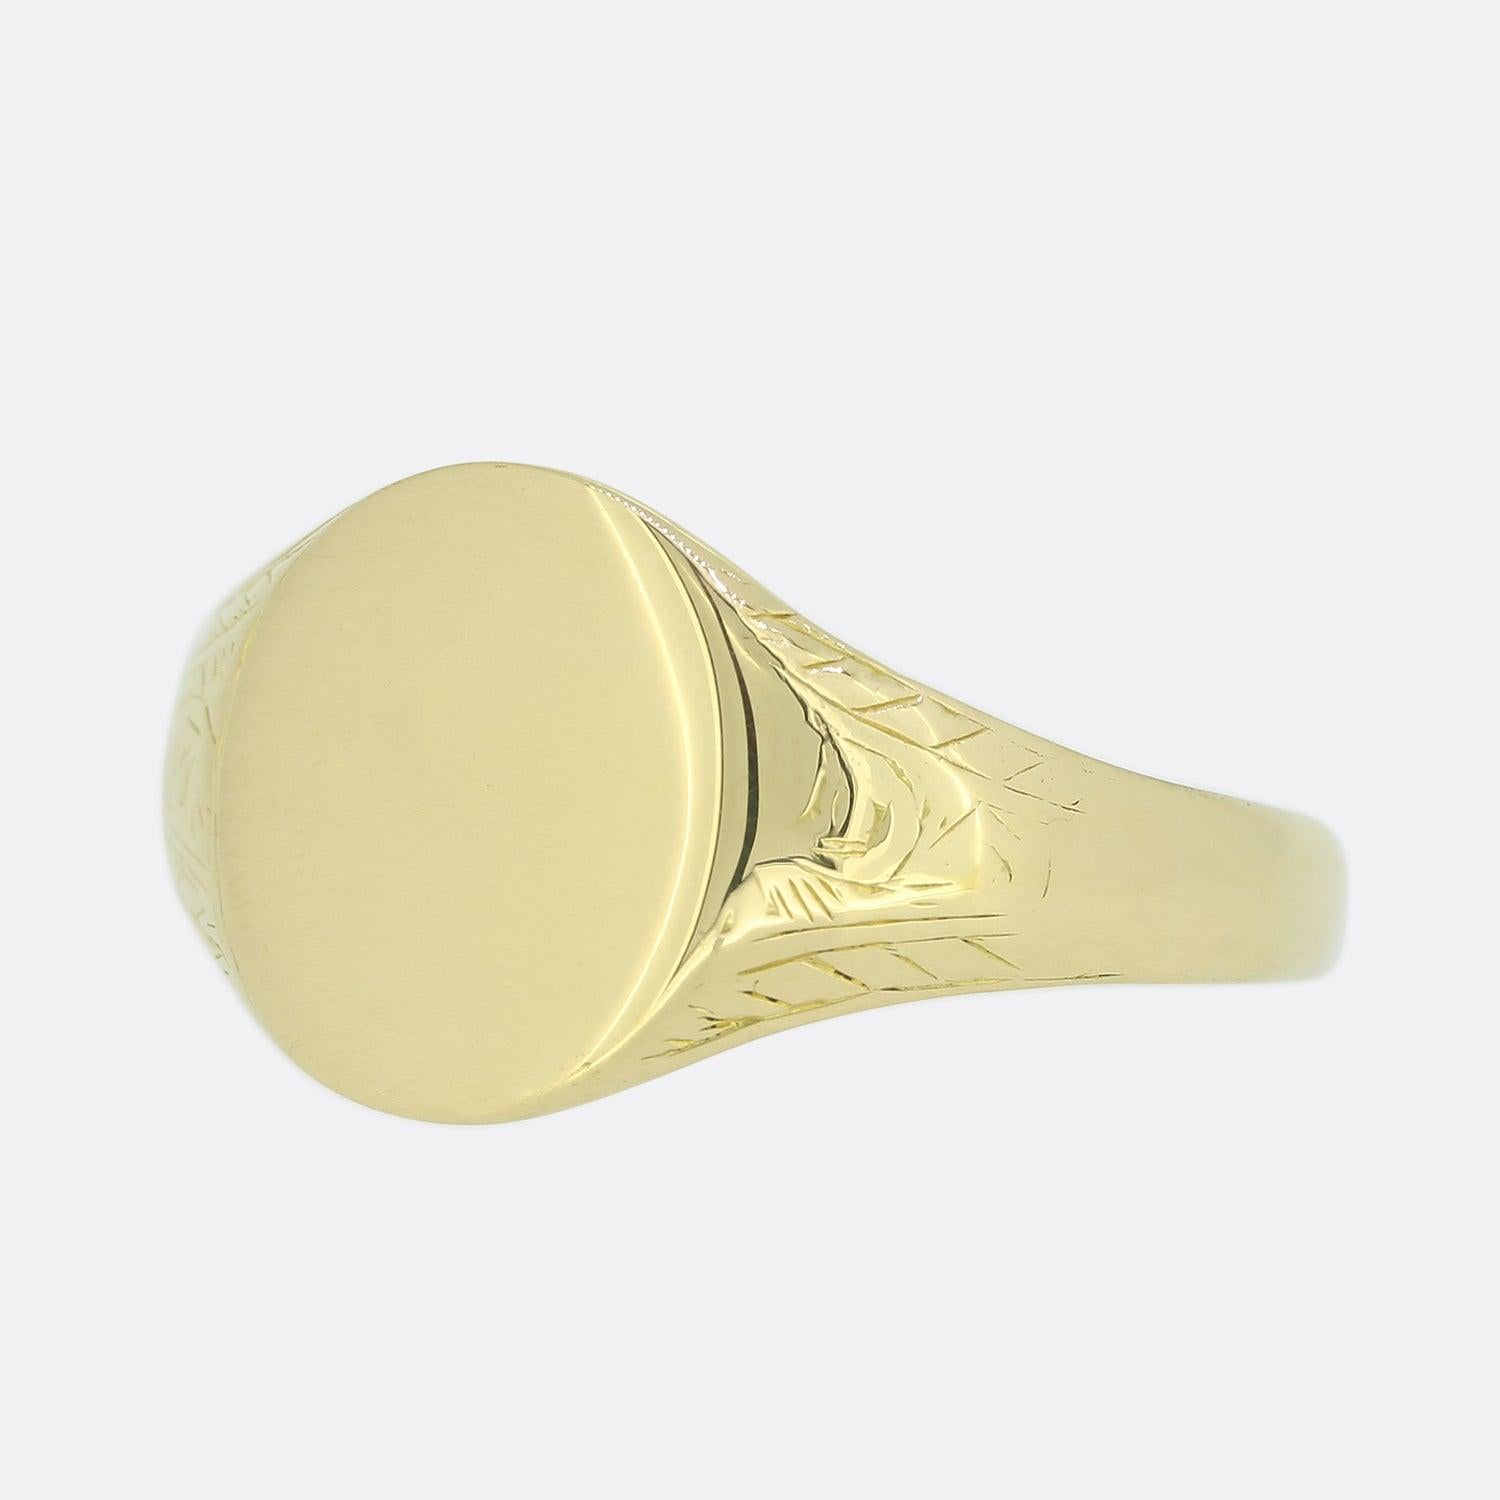 Il s'agit d'une chevalière vintage en or jaune 18ct. L'anneau présente une face ovale avec des épaulements aux motifs légers. La bague est entièrement poinçonnée 18ct mais la lettre de la date s'est effacée.

Condit : Utilisé (Très bon)
Poids : 3.6